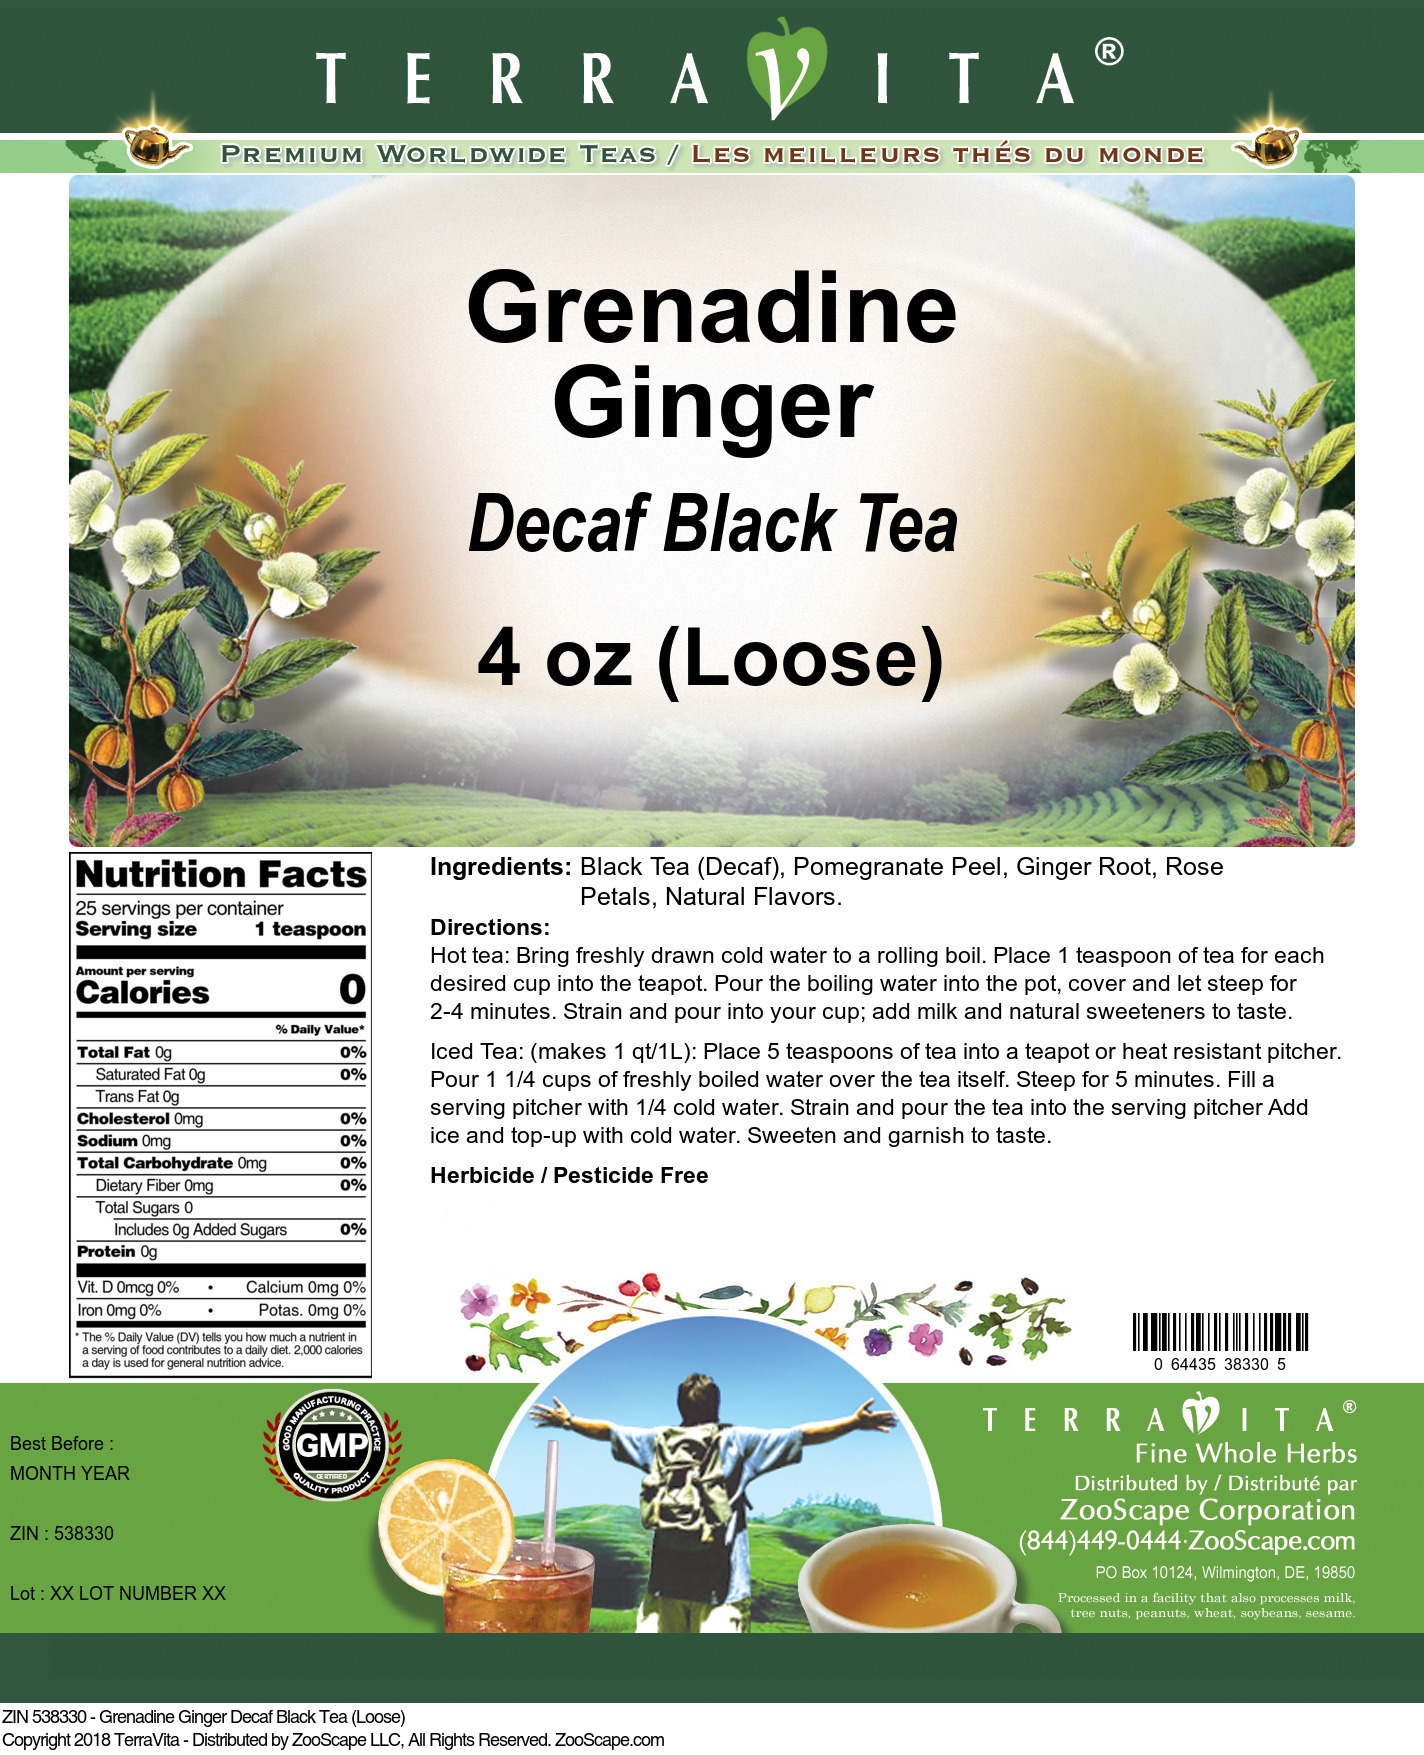 Grenadine Ginger Decaf Black Tea (Loose) - Label